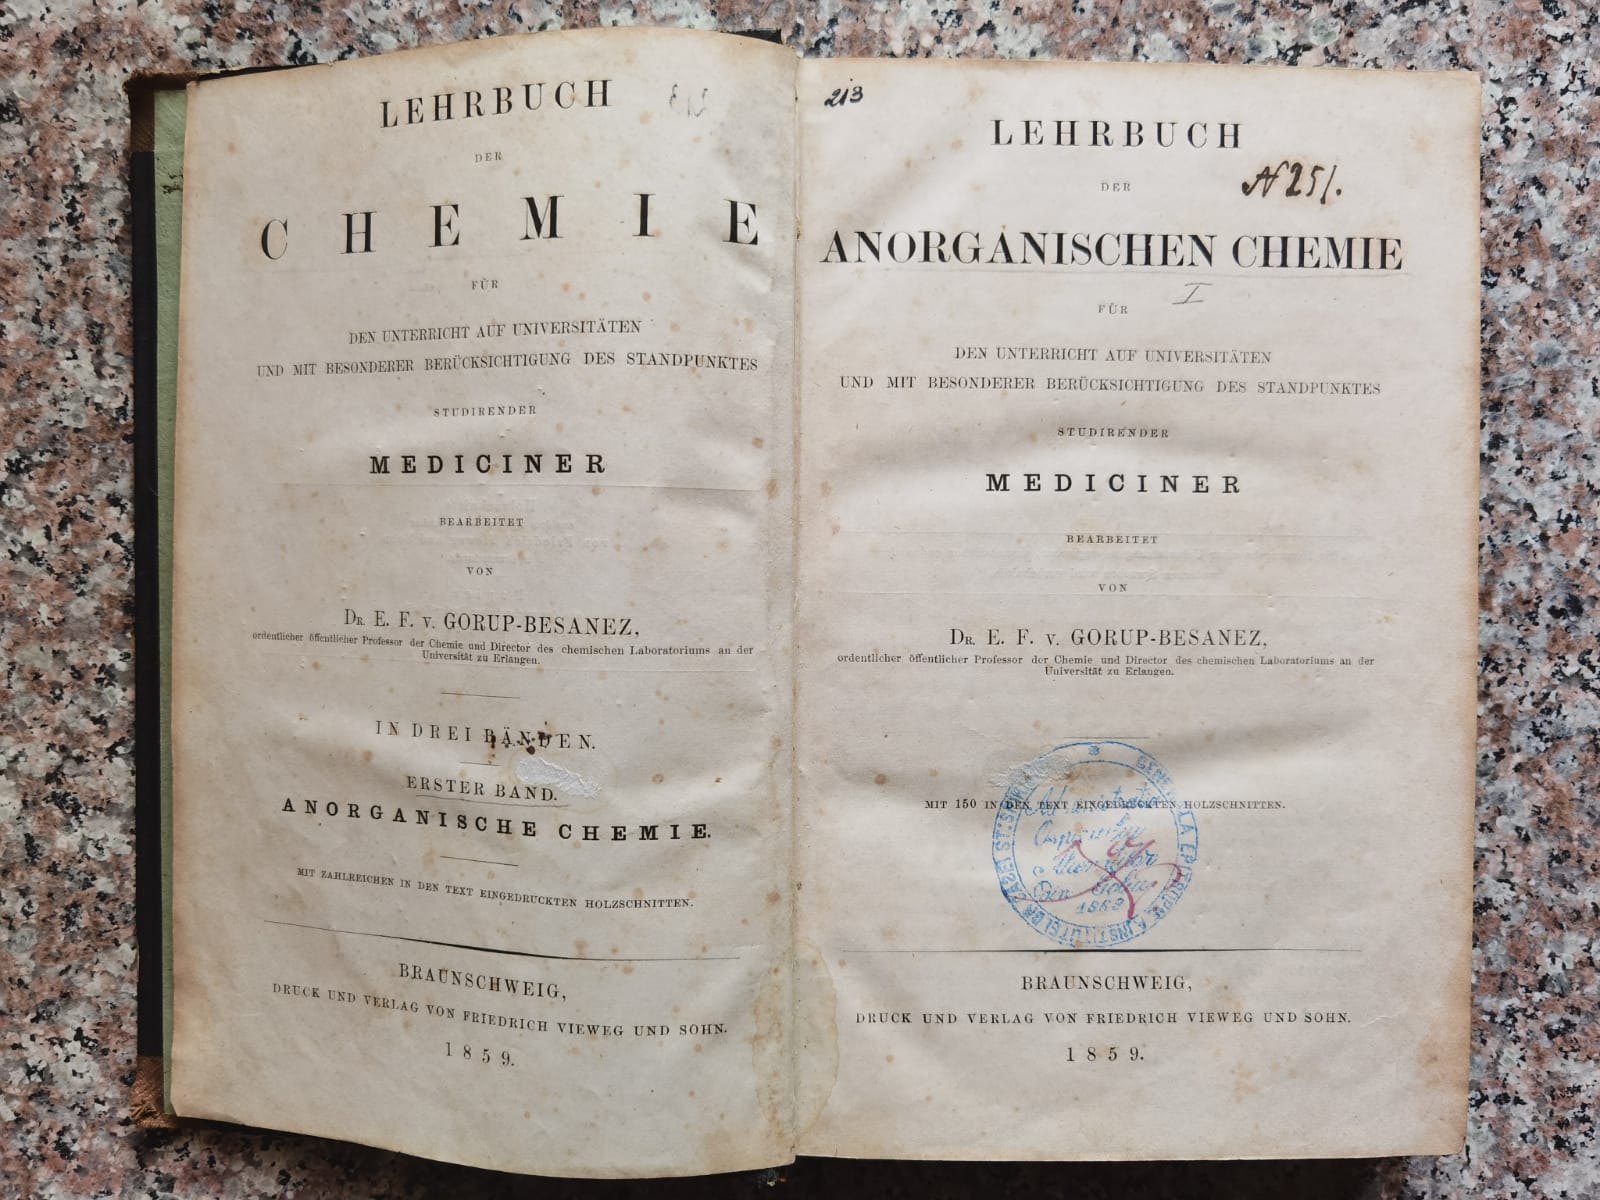 lehrbuch der anorganischen chemie fur den unterricht auf universitaten                               dr. e. f. v. gorup-besanez                                                                          